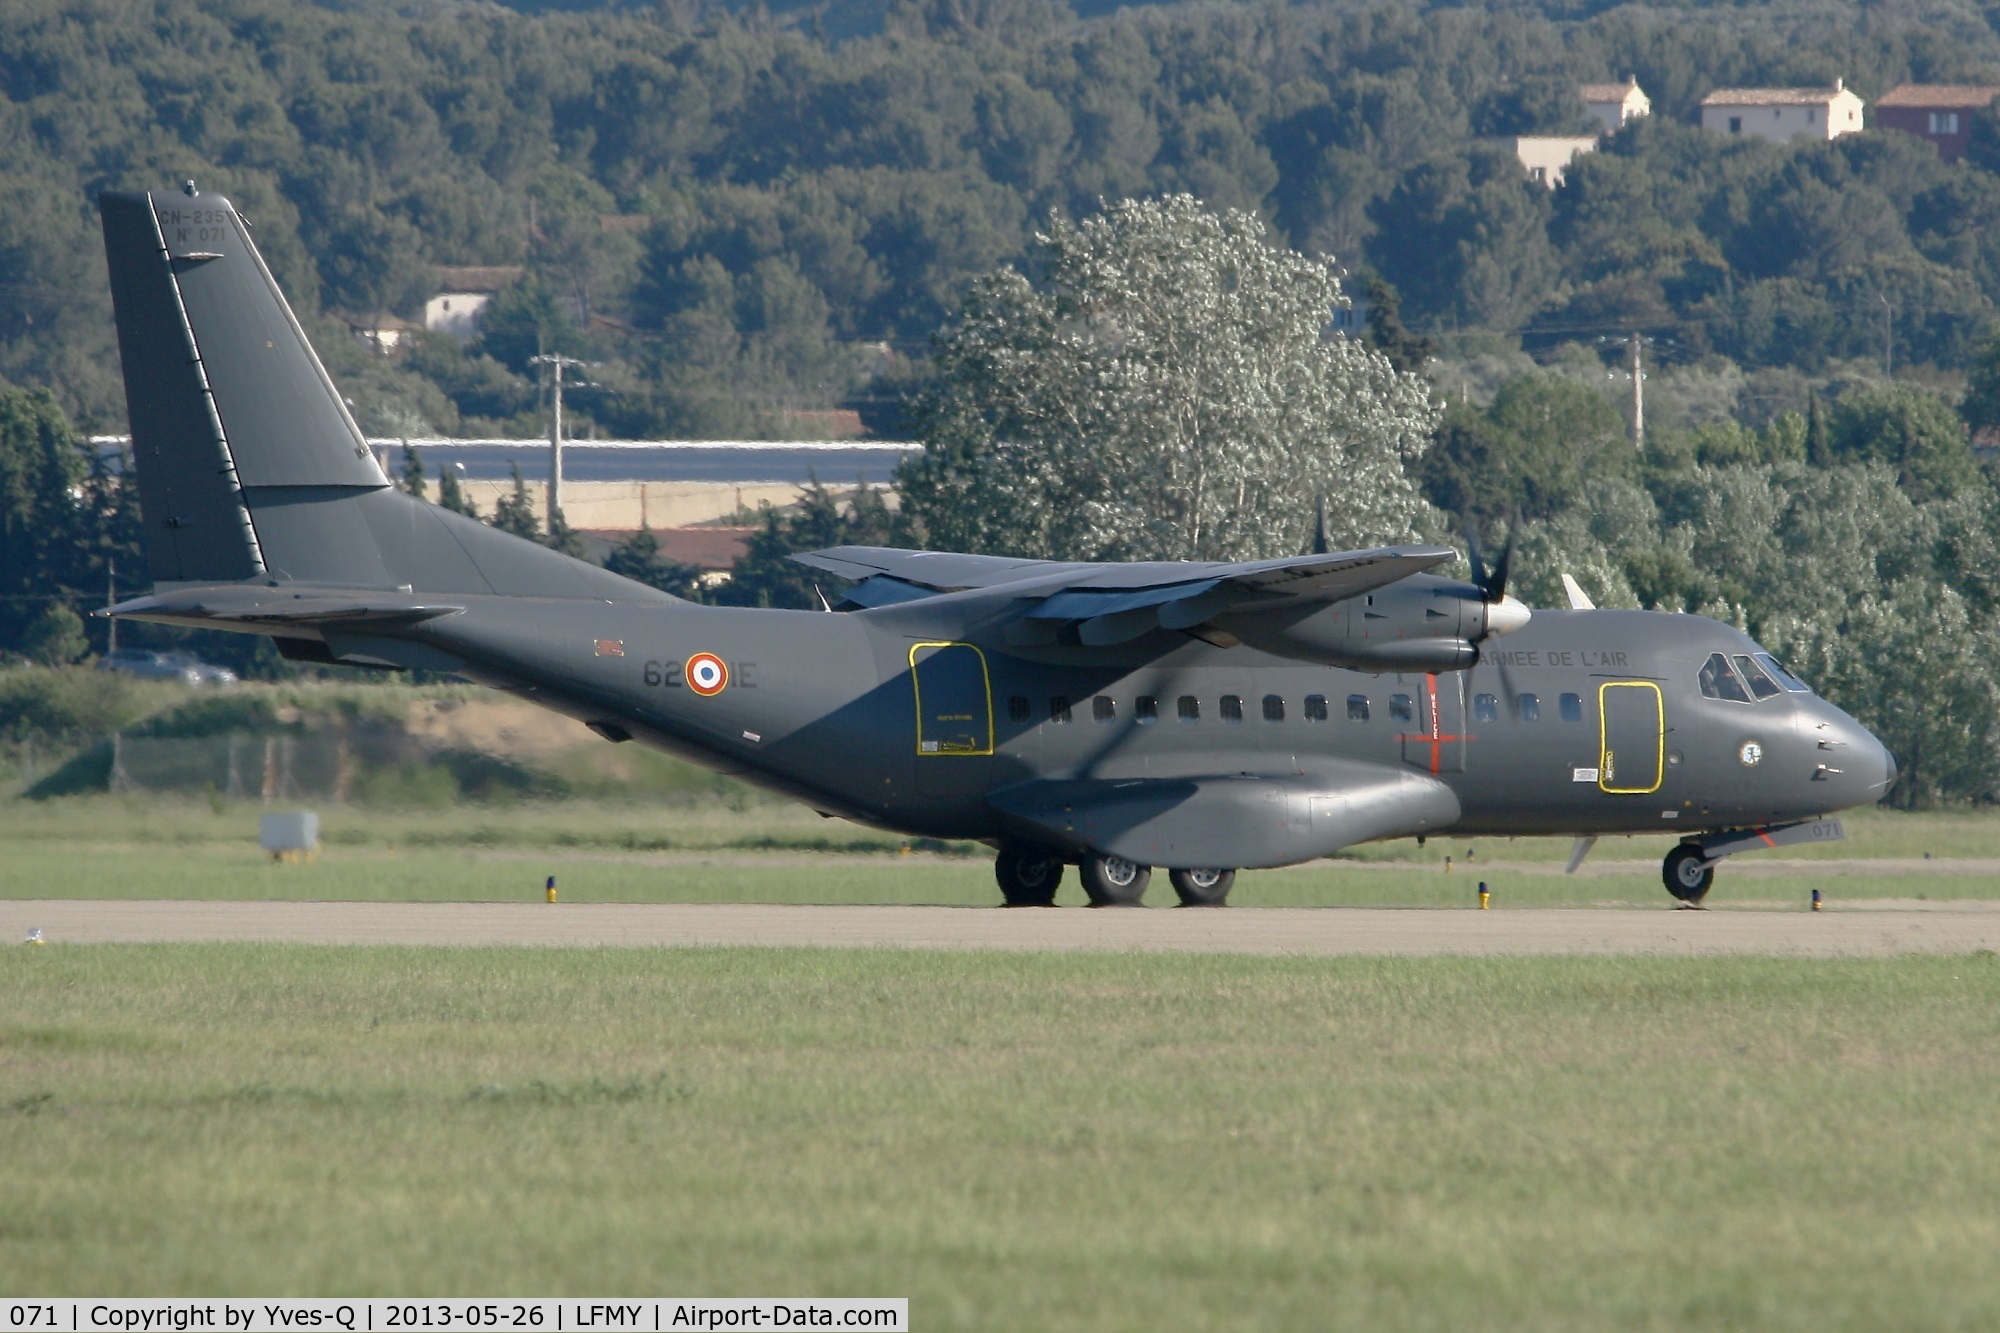 071, Airtech CN-235-200M C/N C071, Airtech CN-235-200M (62-IE), Landing after parachutists dropping, Salon de Provence Air Base 701 (LFMY)